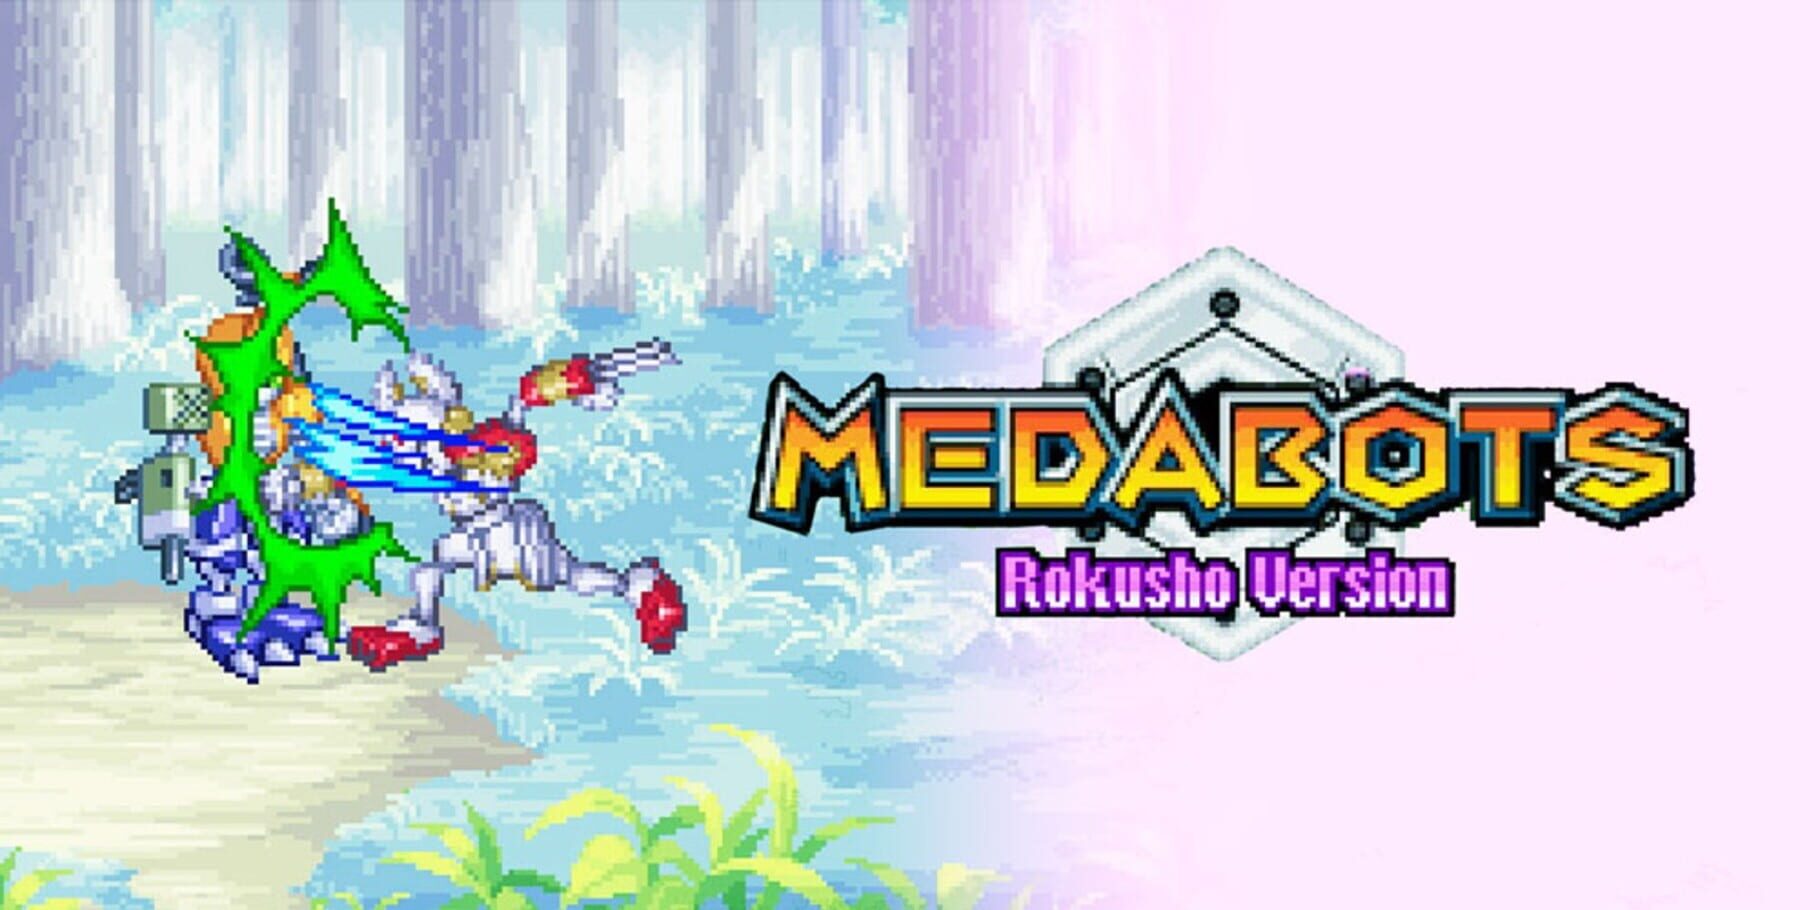 Medabots: Rokusho artwork